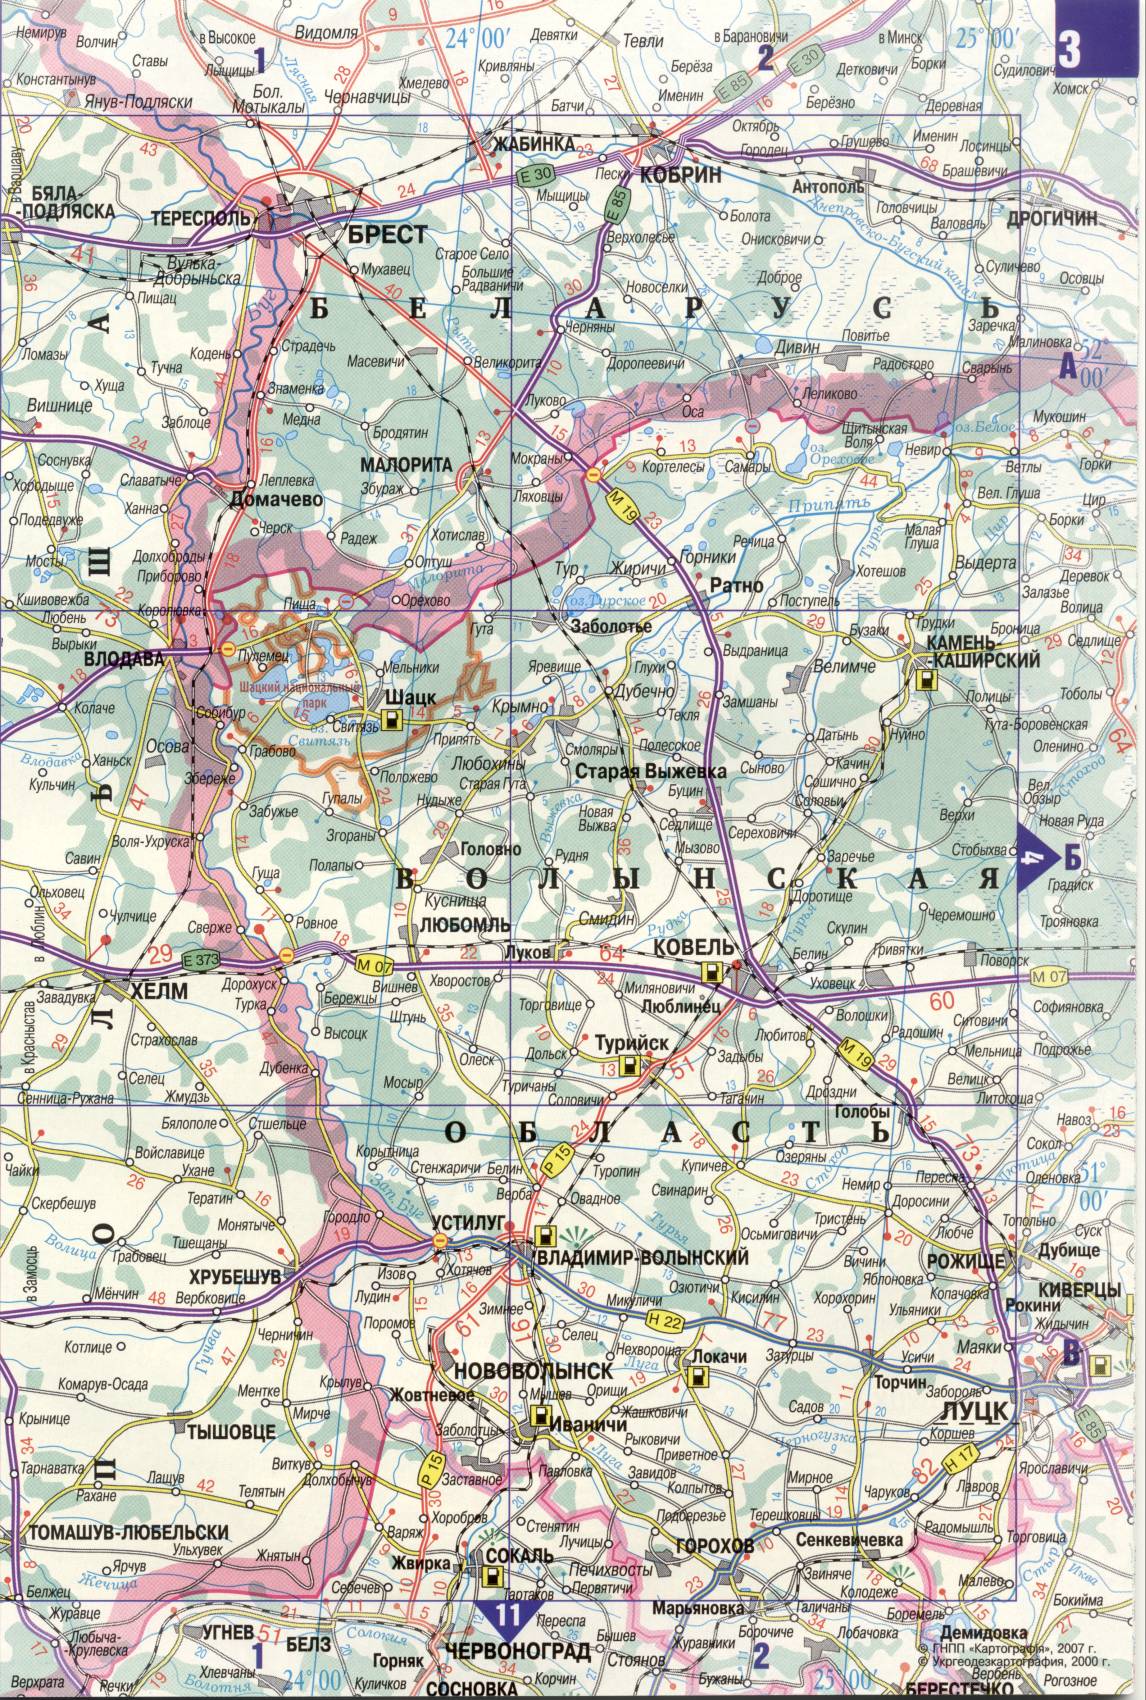 Karte der Ukraine. Detaillierte Straßenkarte der Ukraine avtomobilnog Satin. kostenlos herunterladen, B0